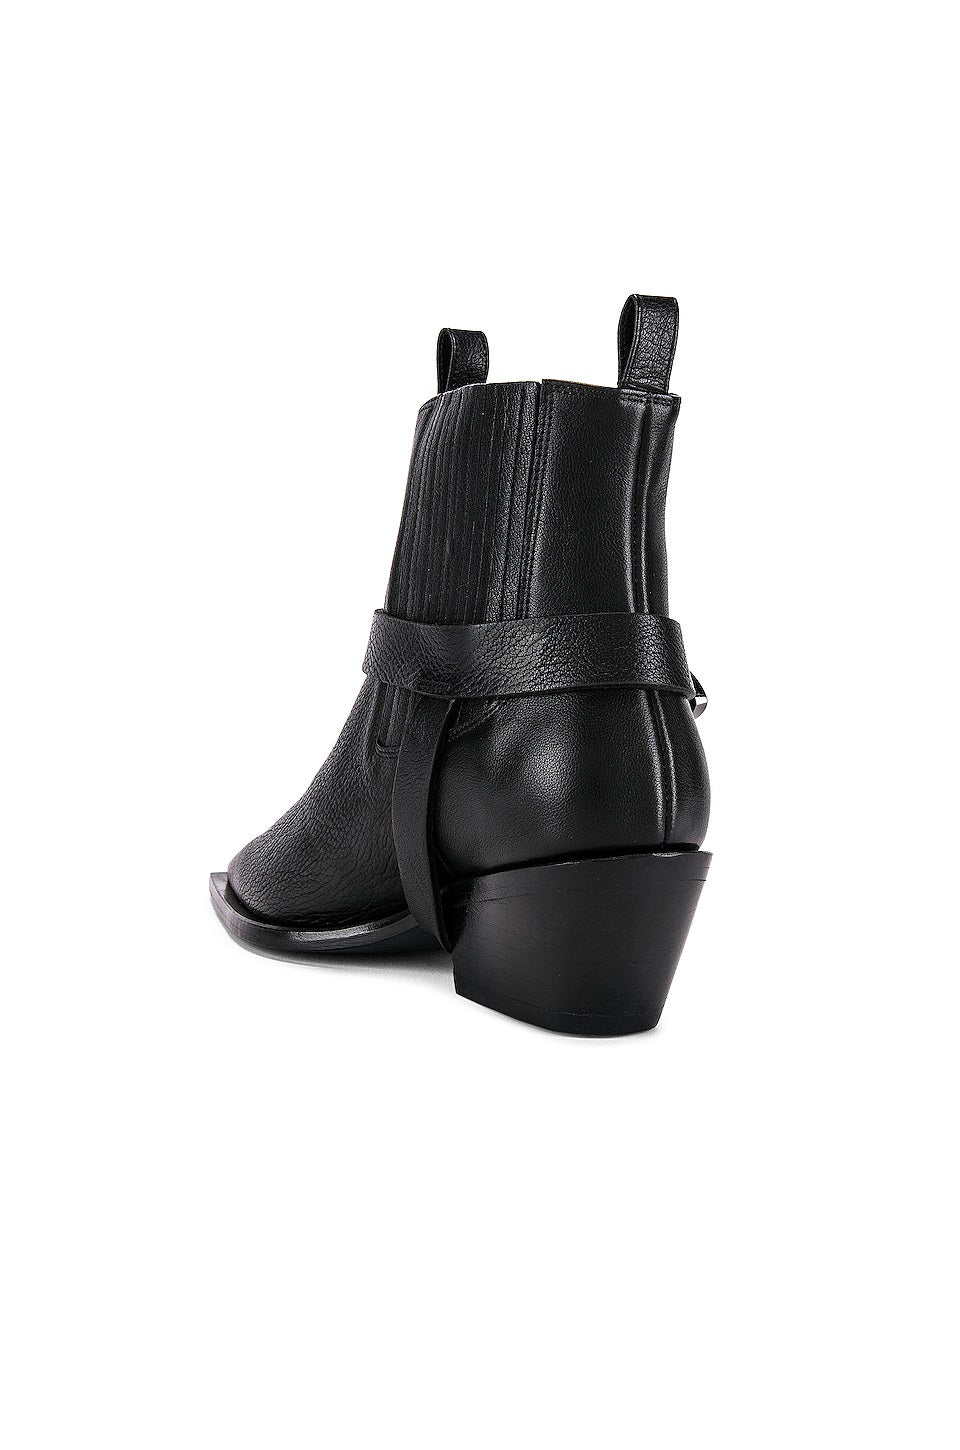 Anine Bing - Rochelle Boots in Black